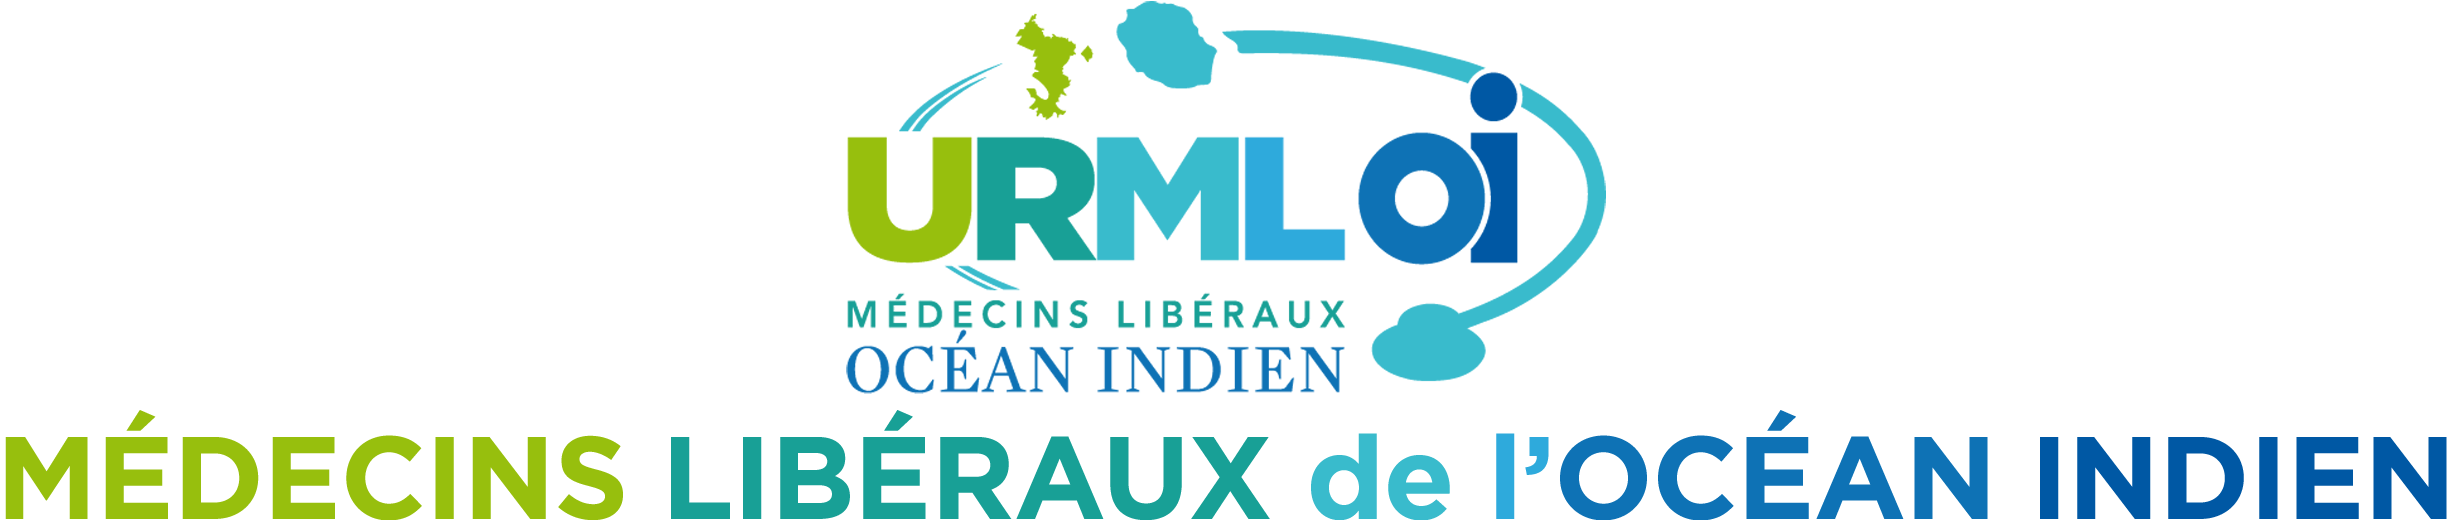 URML OI Union régionale des médecins libéraux Logo